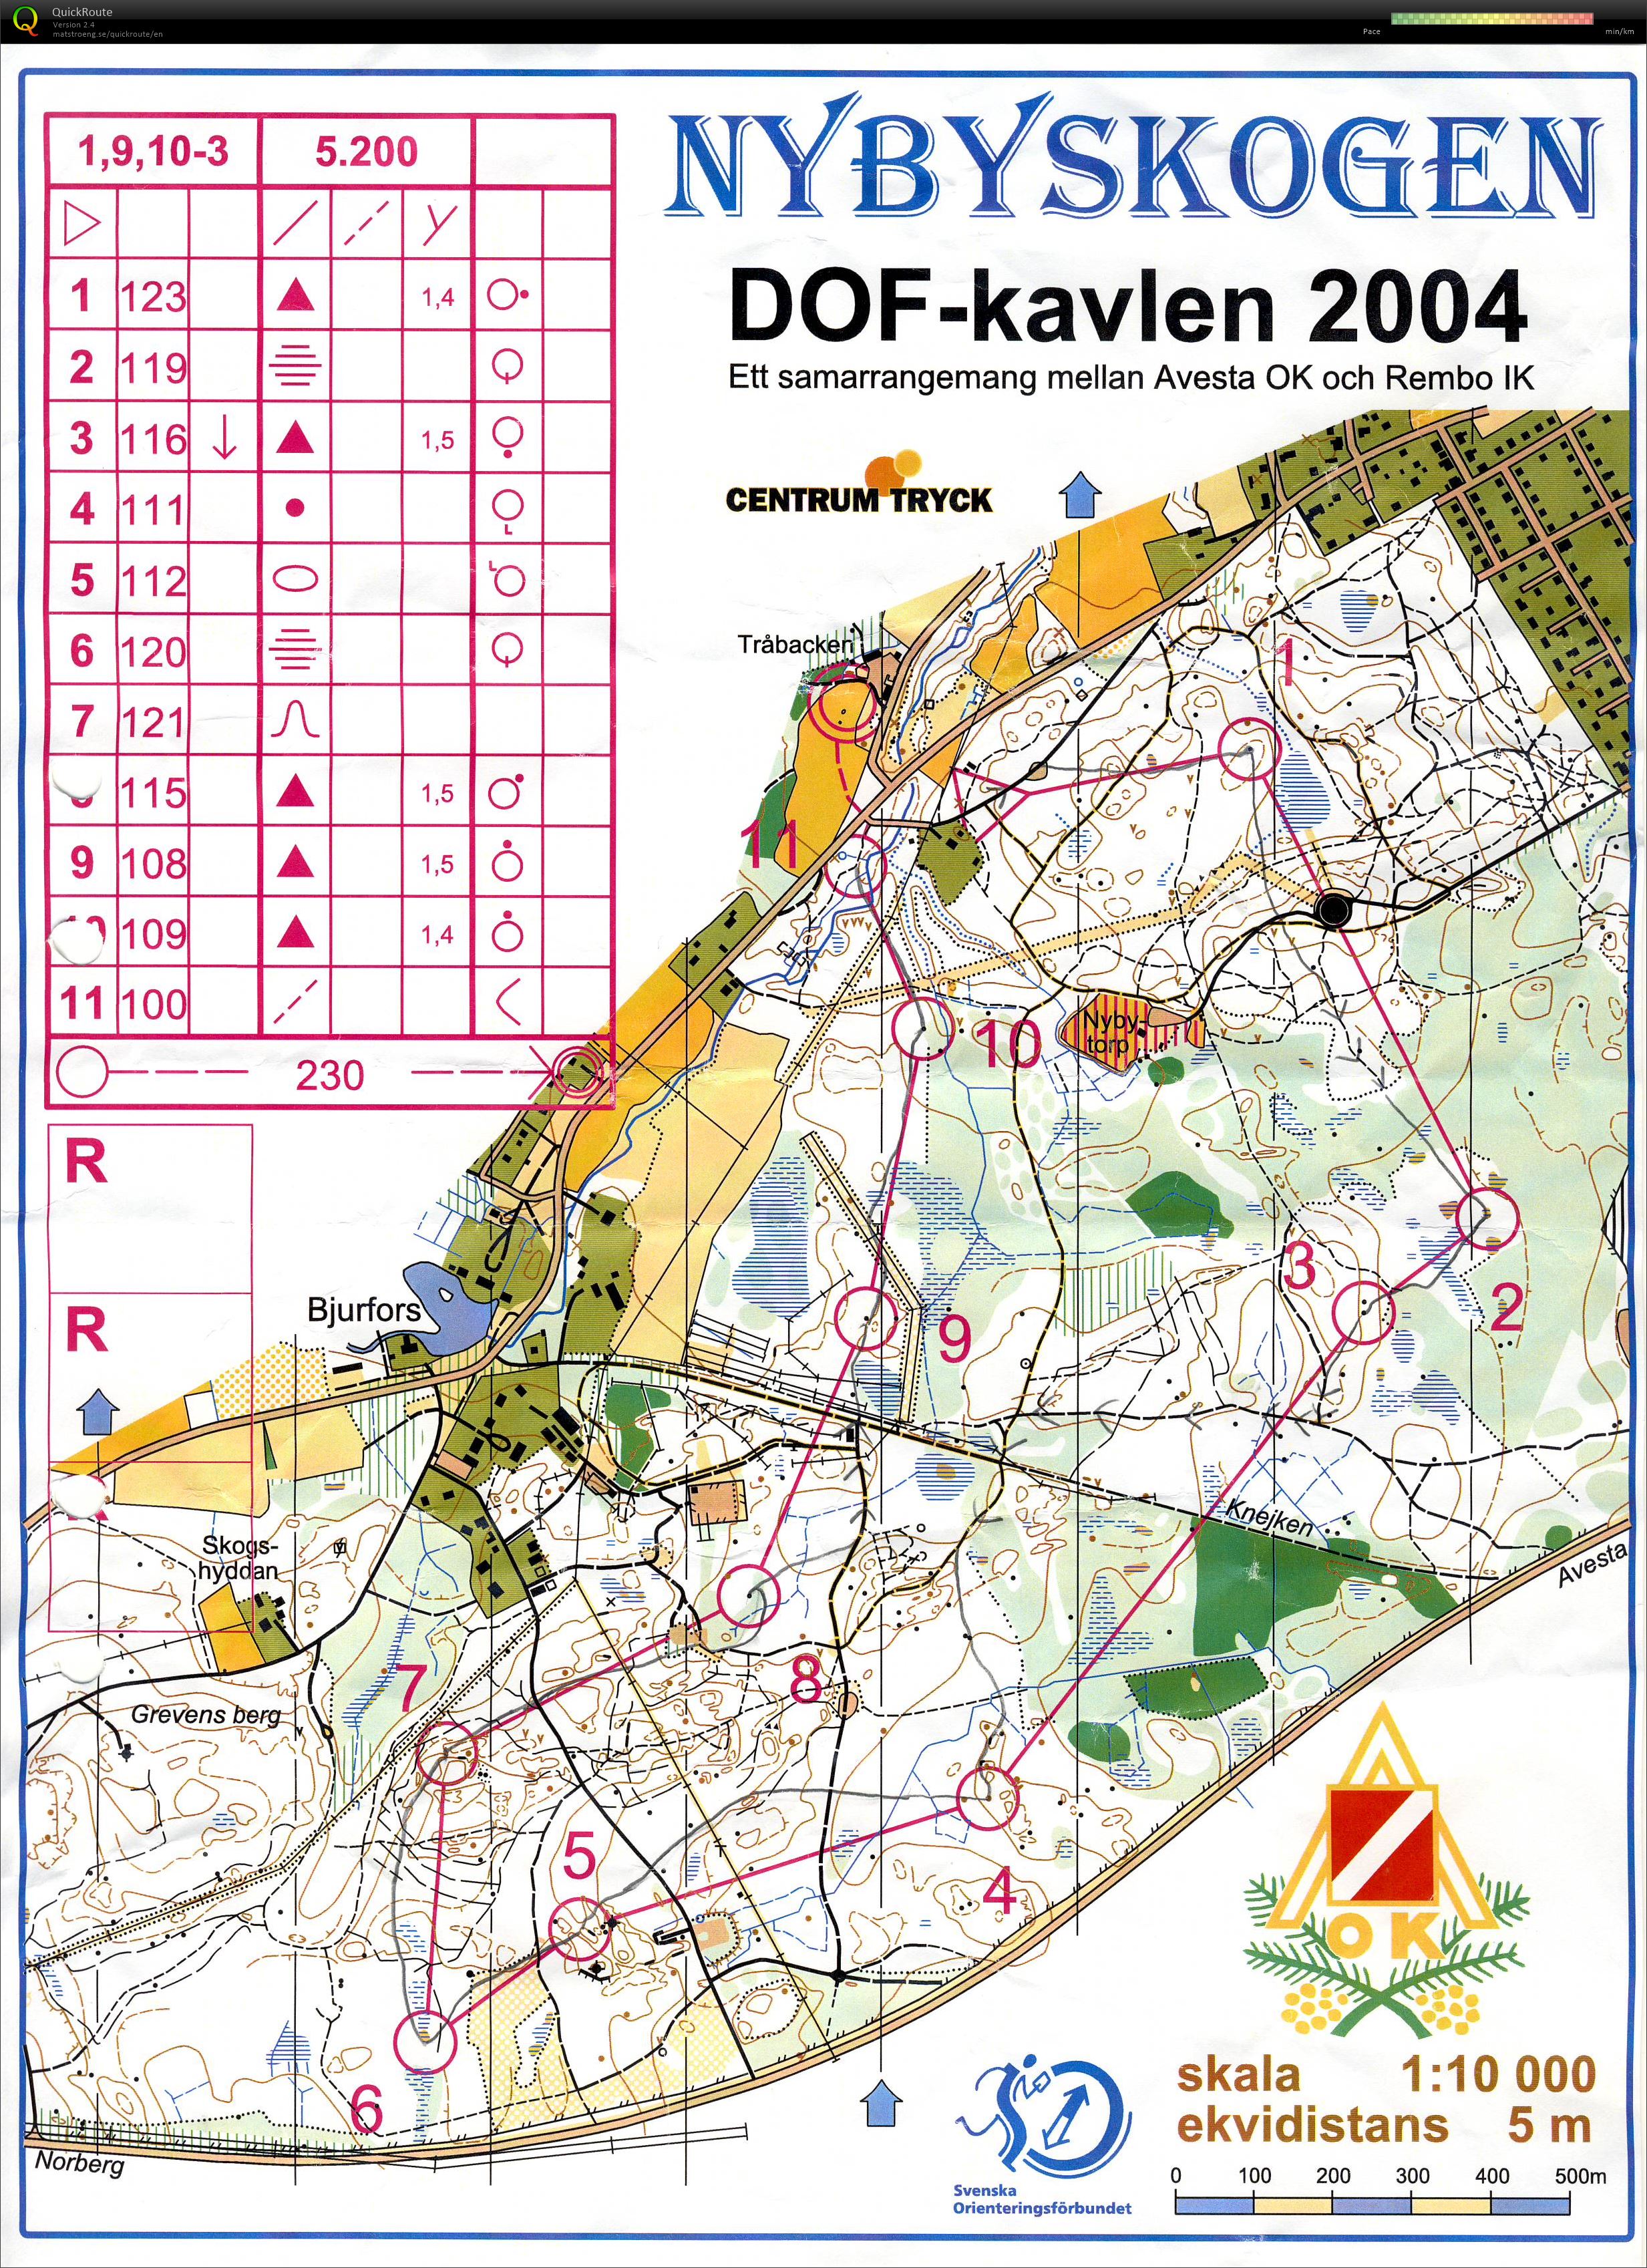 DOF-kavlen (2004-08-14)